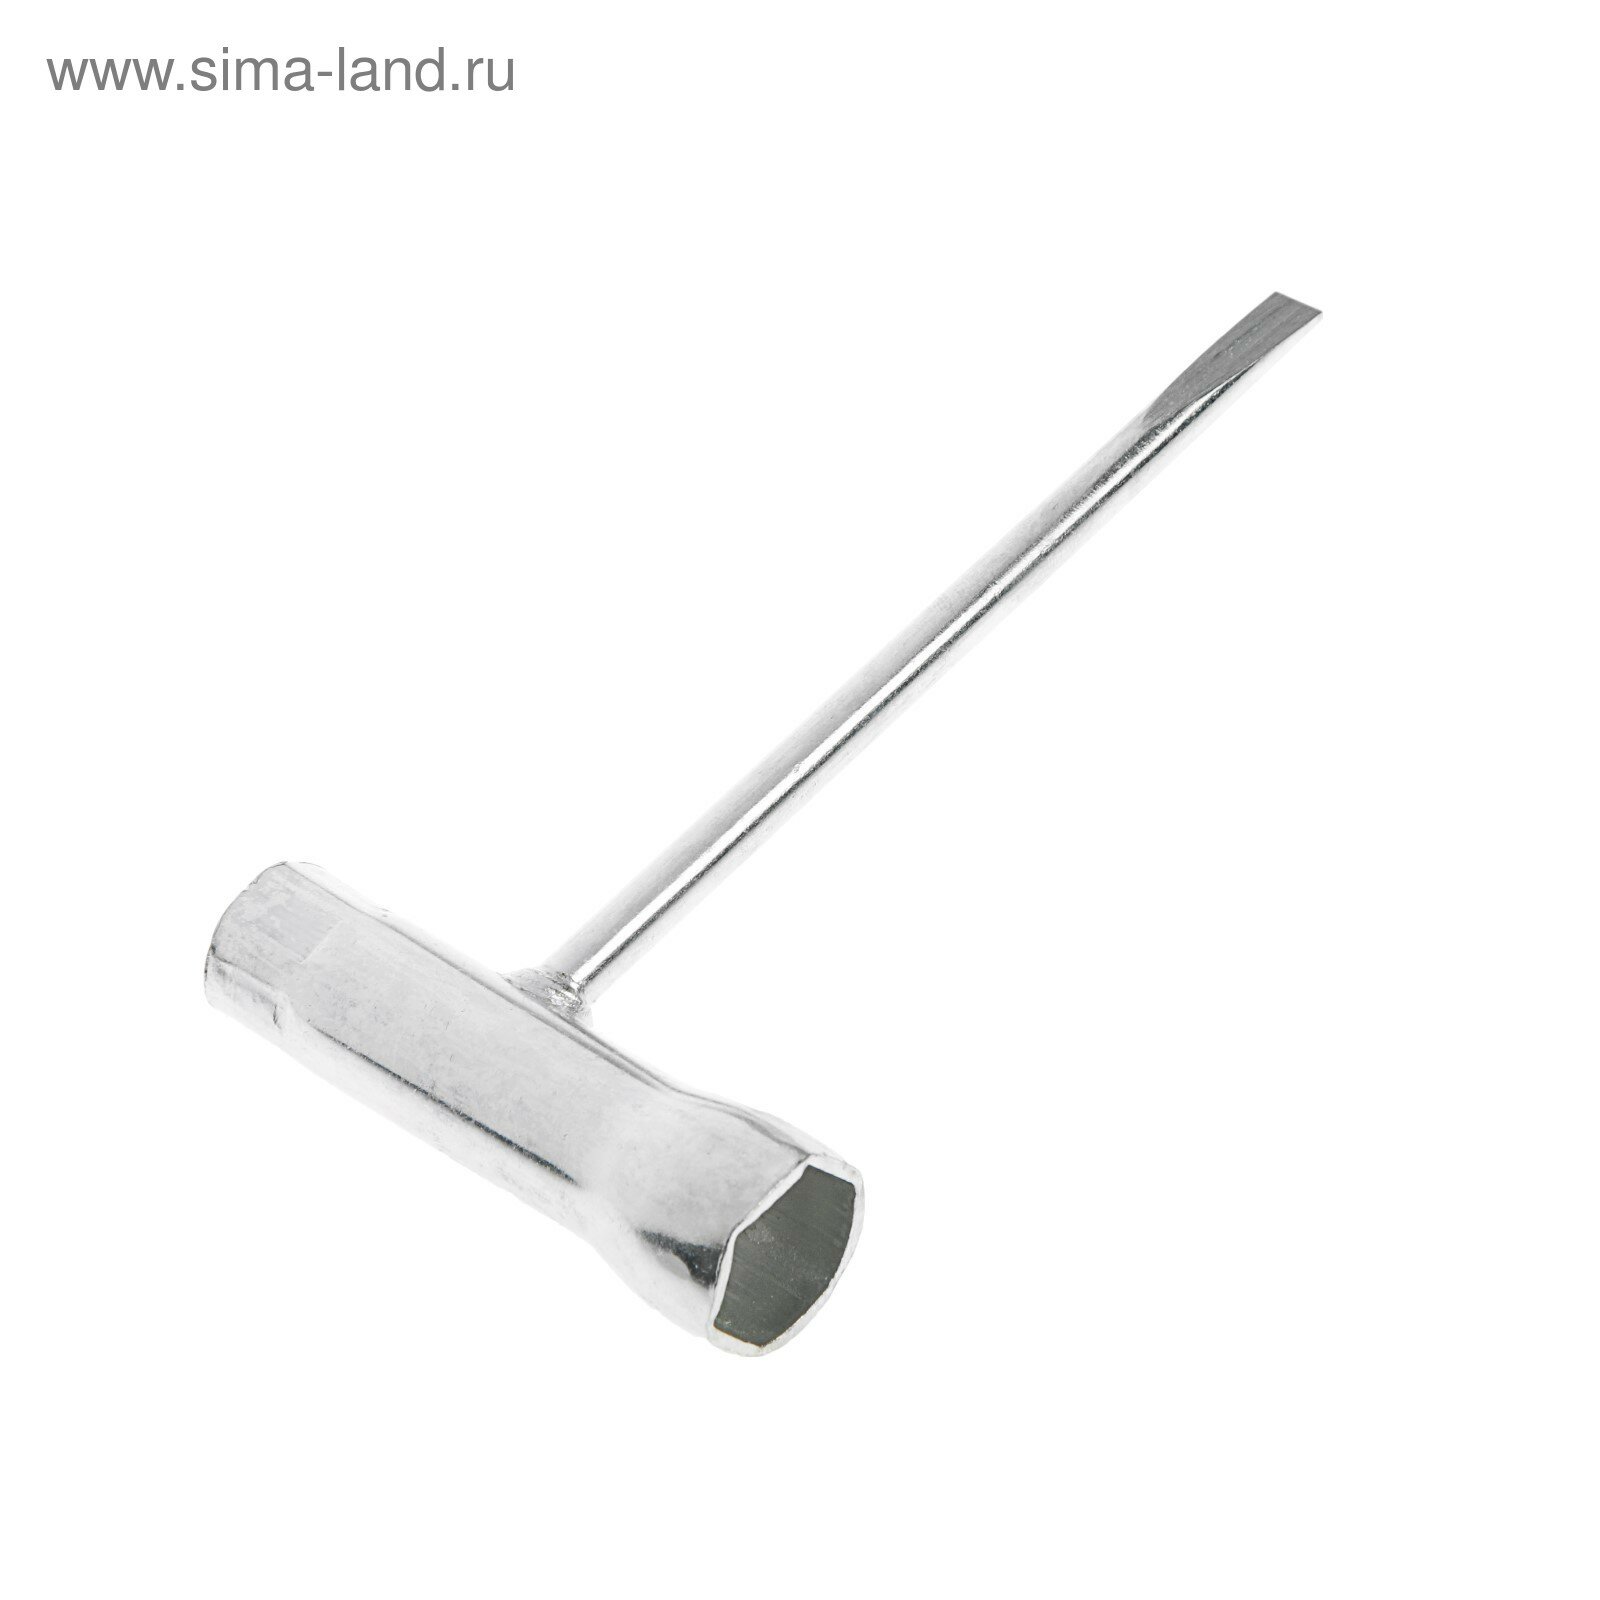 Ключ-отвертка 1319-151 для цепных пил 19/13 мм 2 трубчатых ключа и отвертка